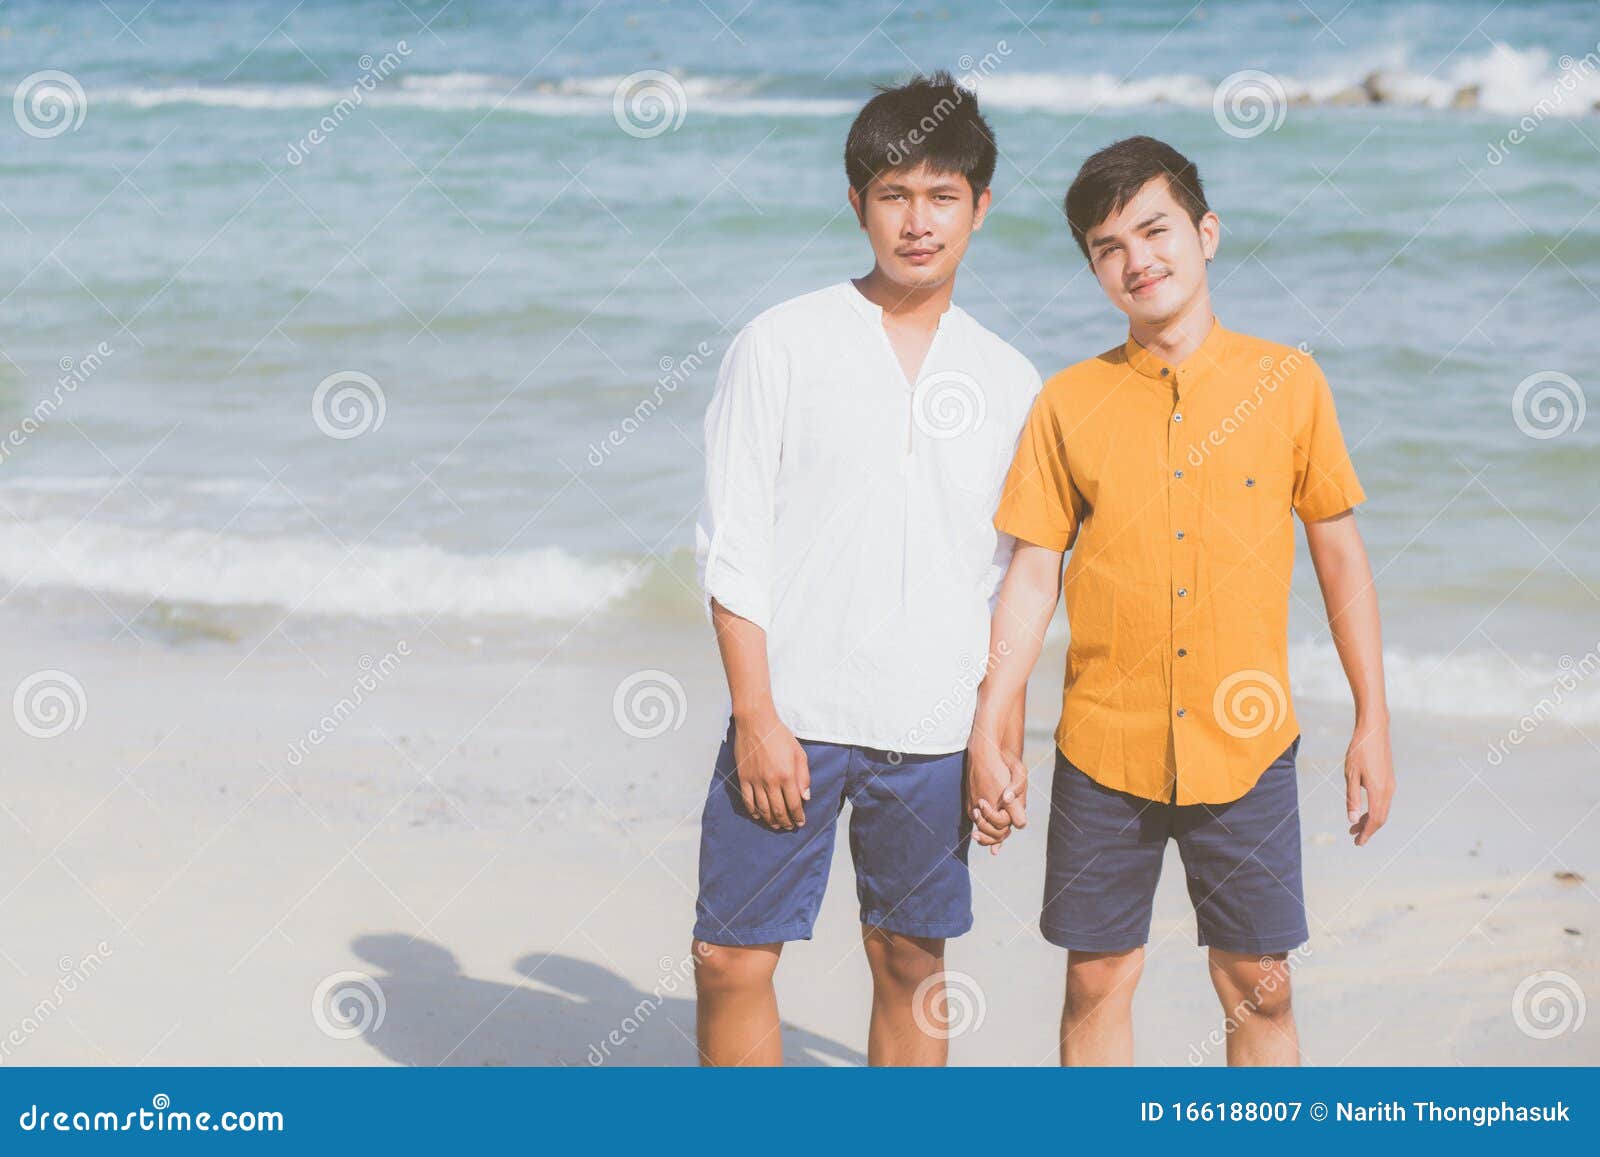 年轻而帅气的亚洲男性同性恋者肖像 库存图片. 图片 包括有 男人, 成人, 婚姻, 聚会所, 友谊, 同性恋 - 214708931